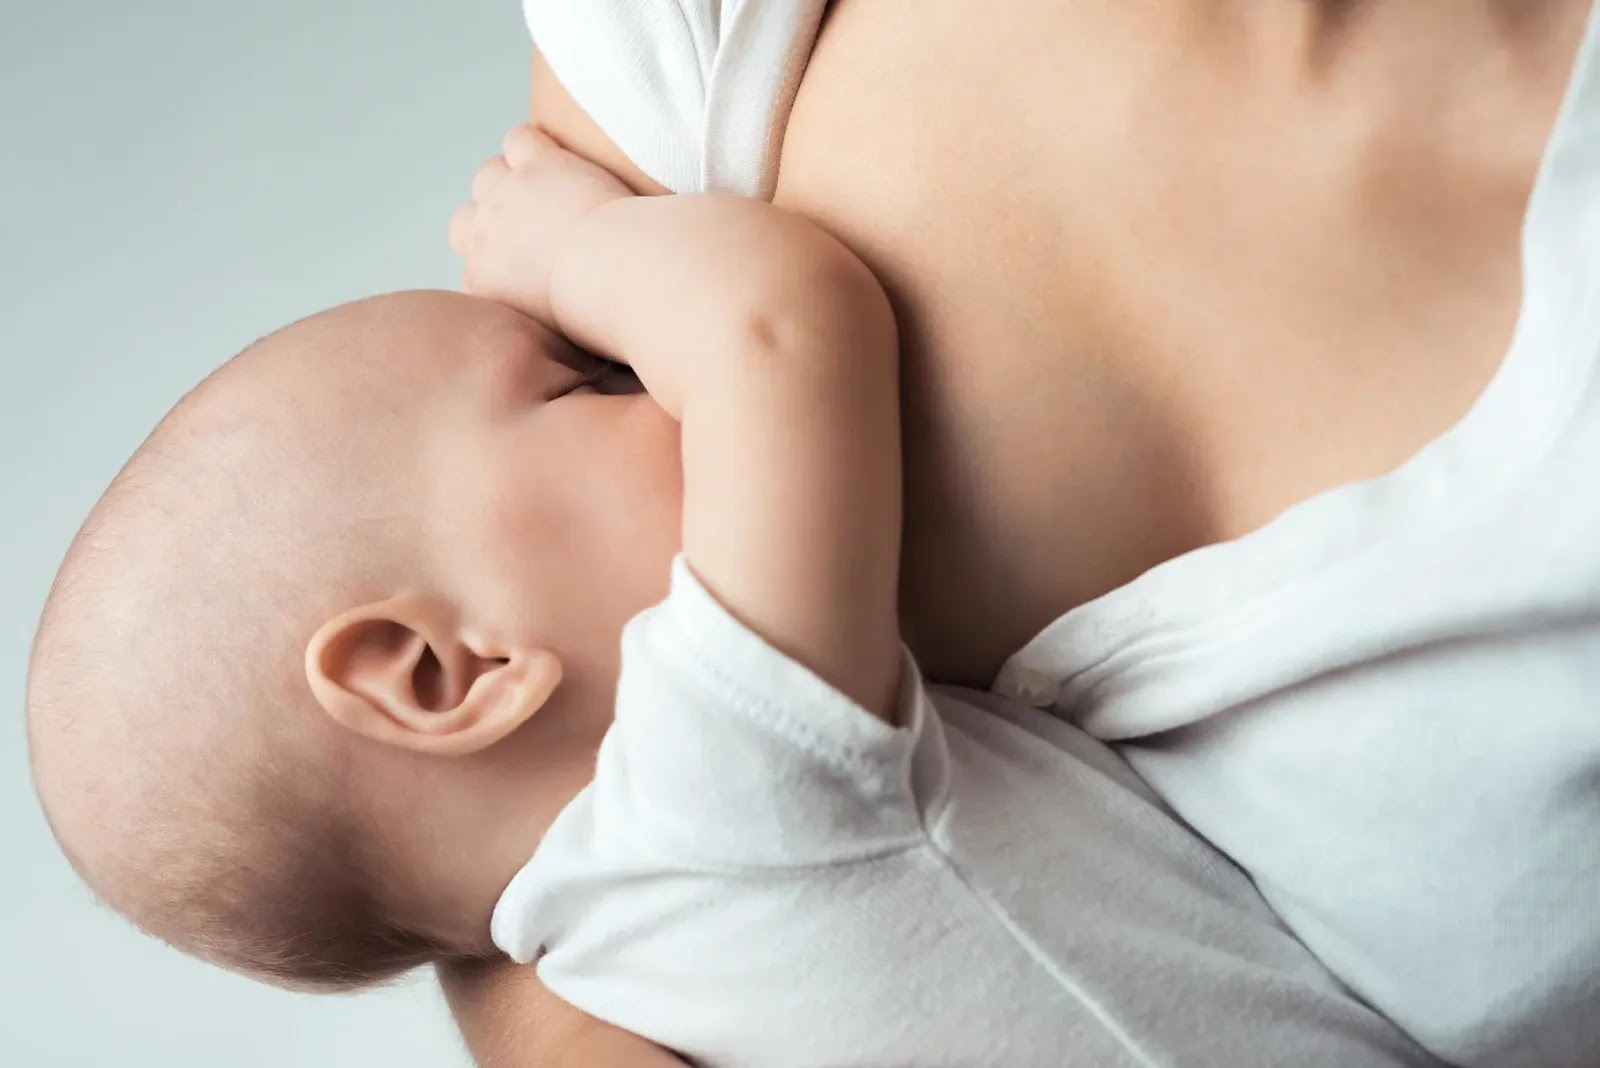 Ребенок отказывается от грудного молока и плачет: что делать